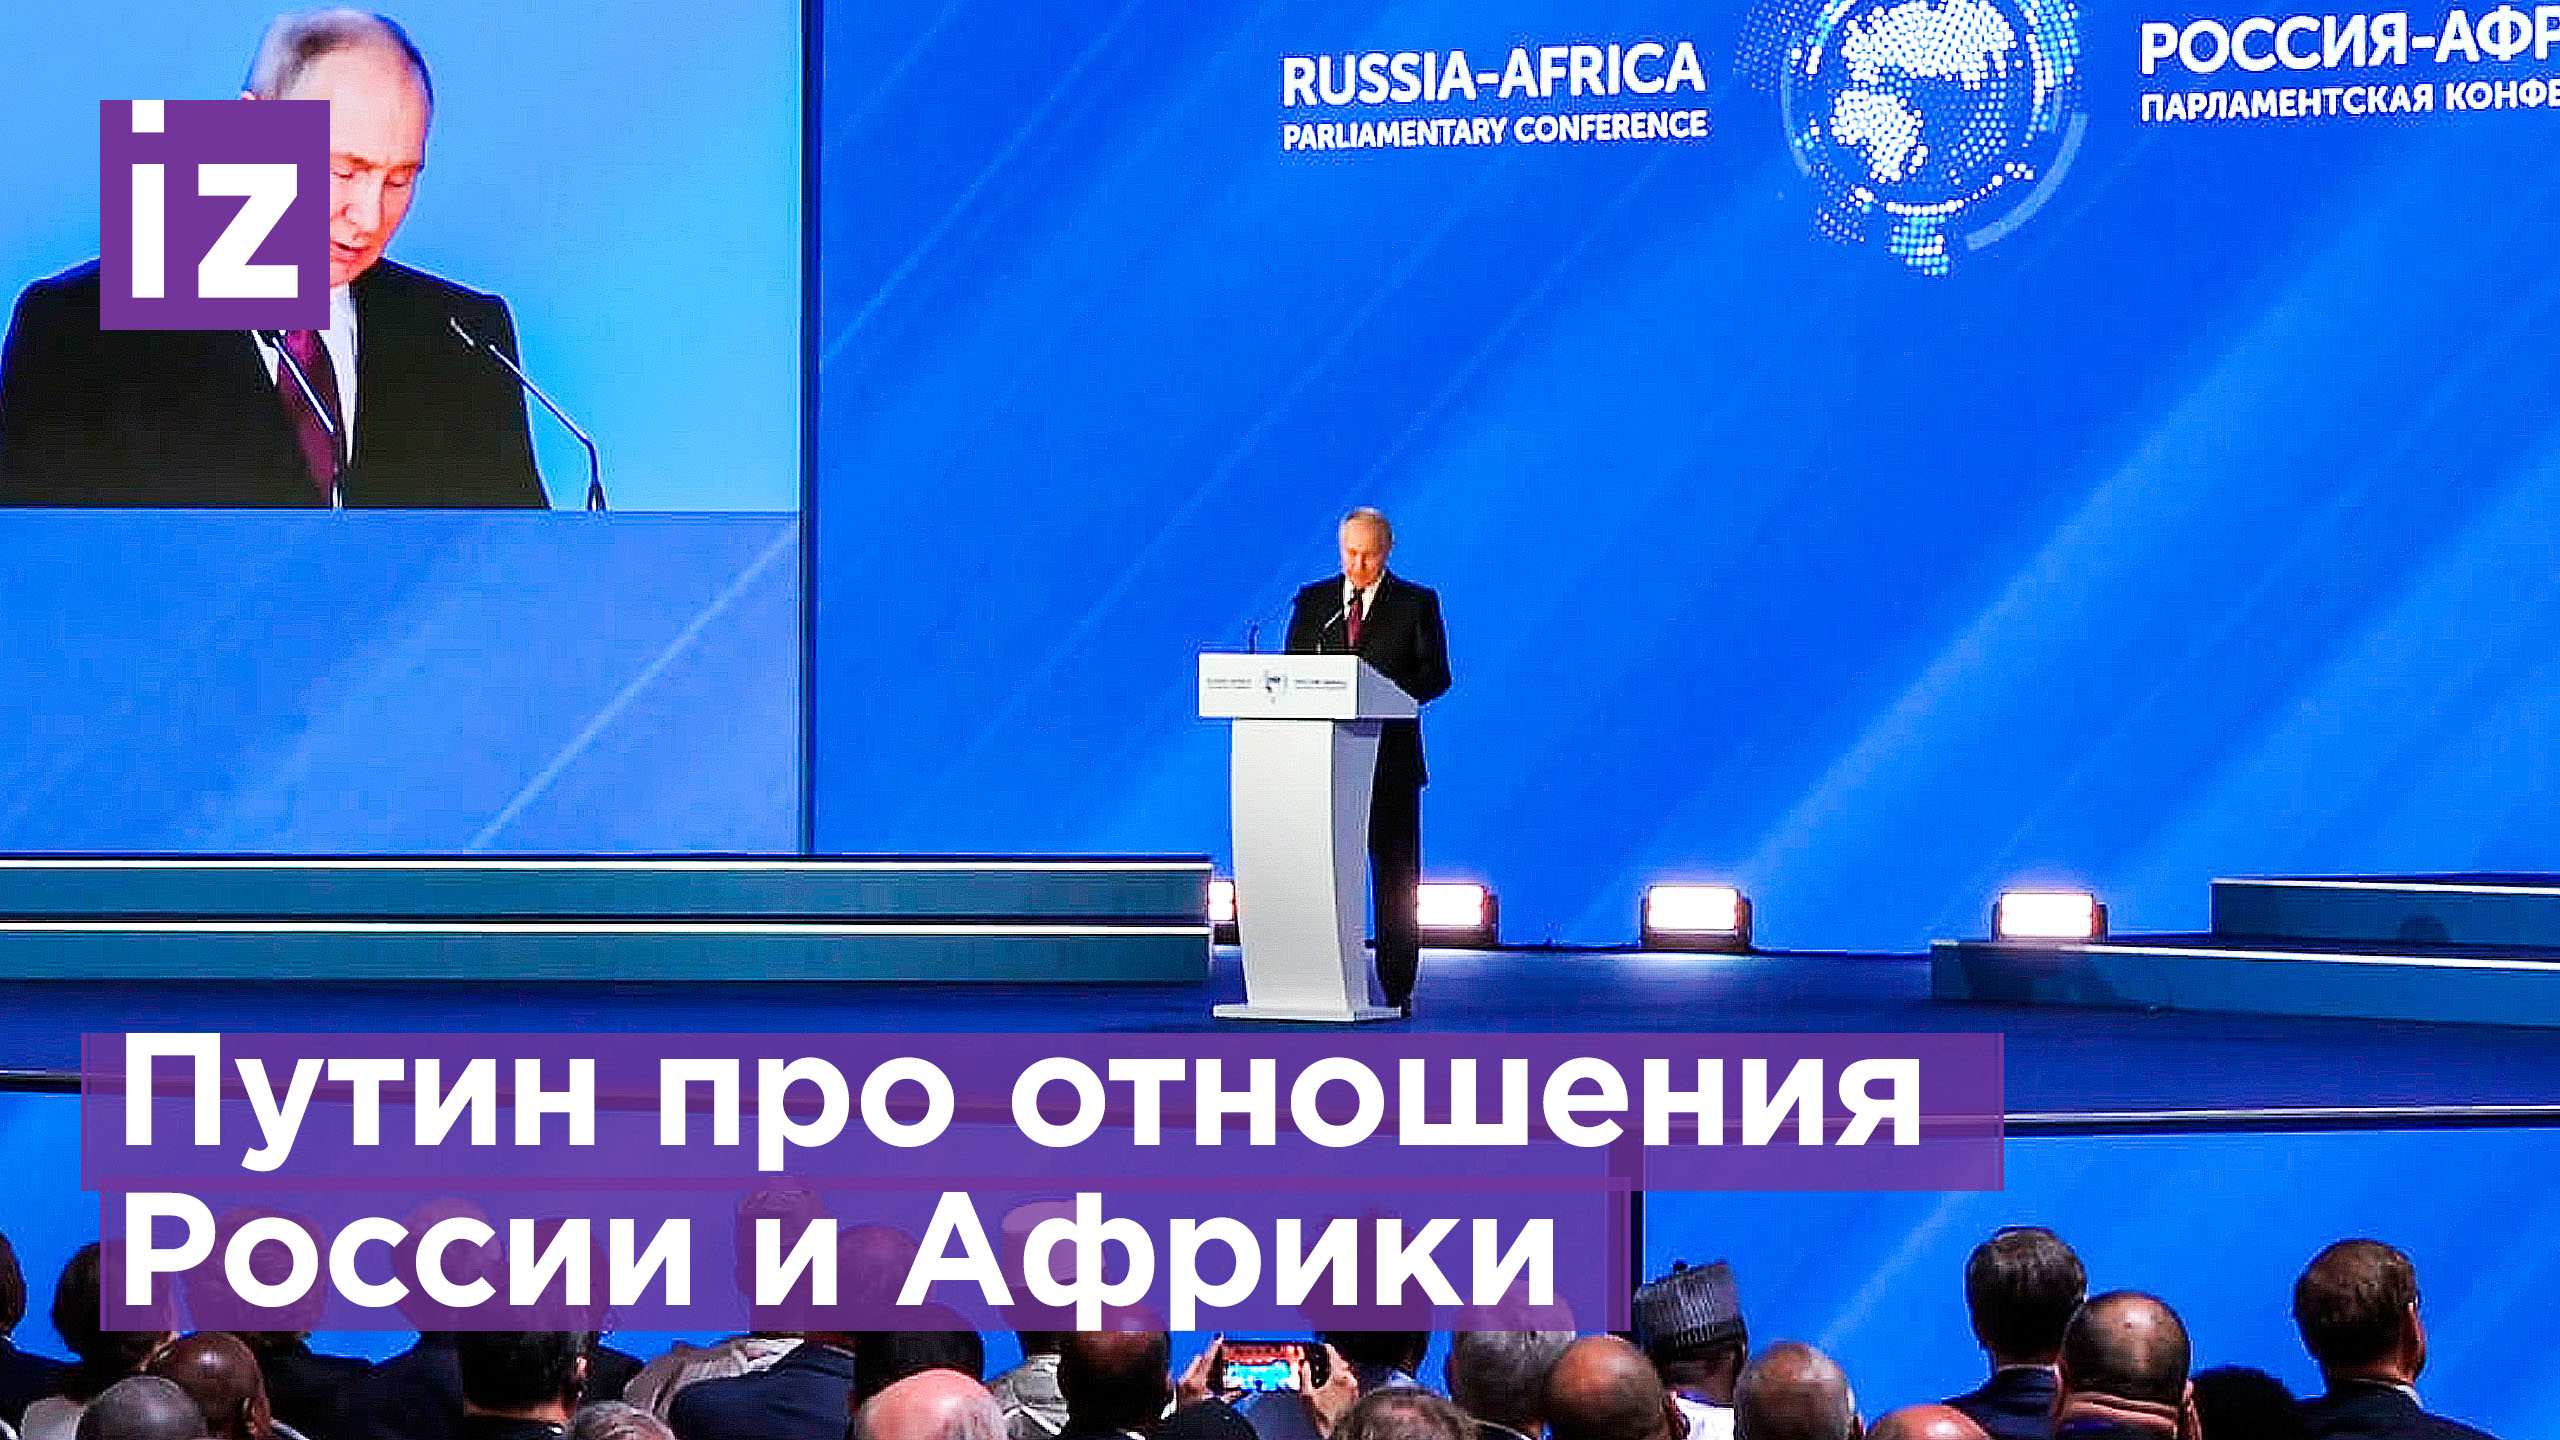 Путин: партнерство РФ и стран Африки приобрело дополнительную динамику и выходит на новый уровень